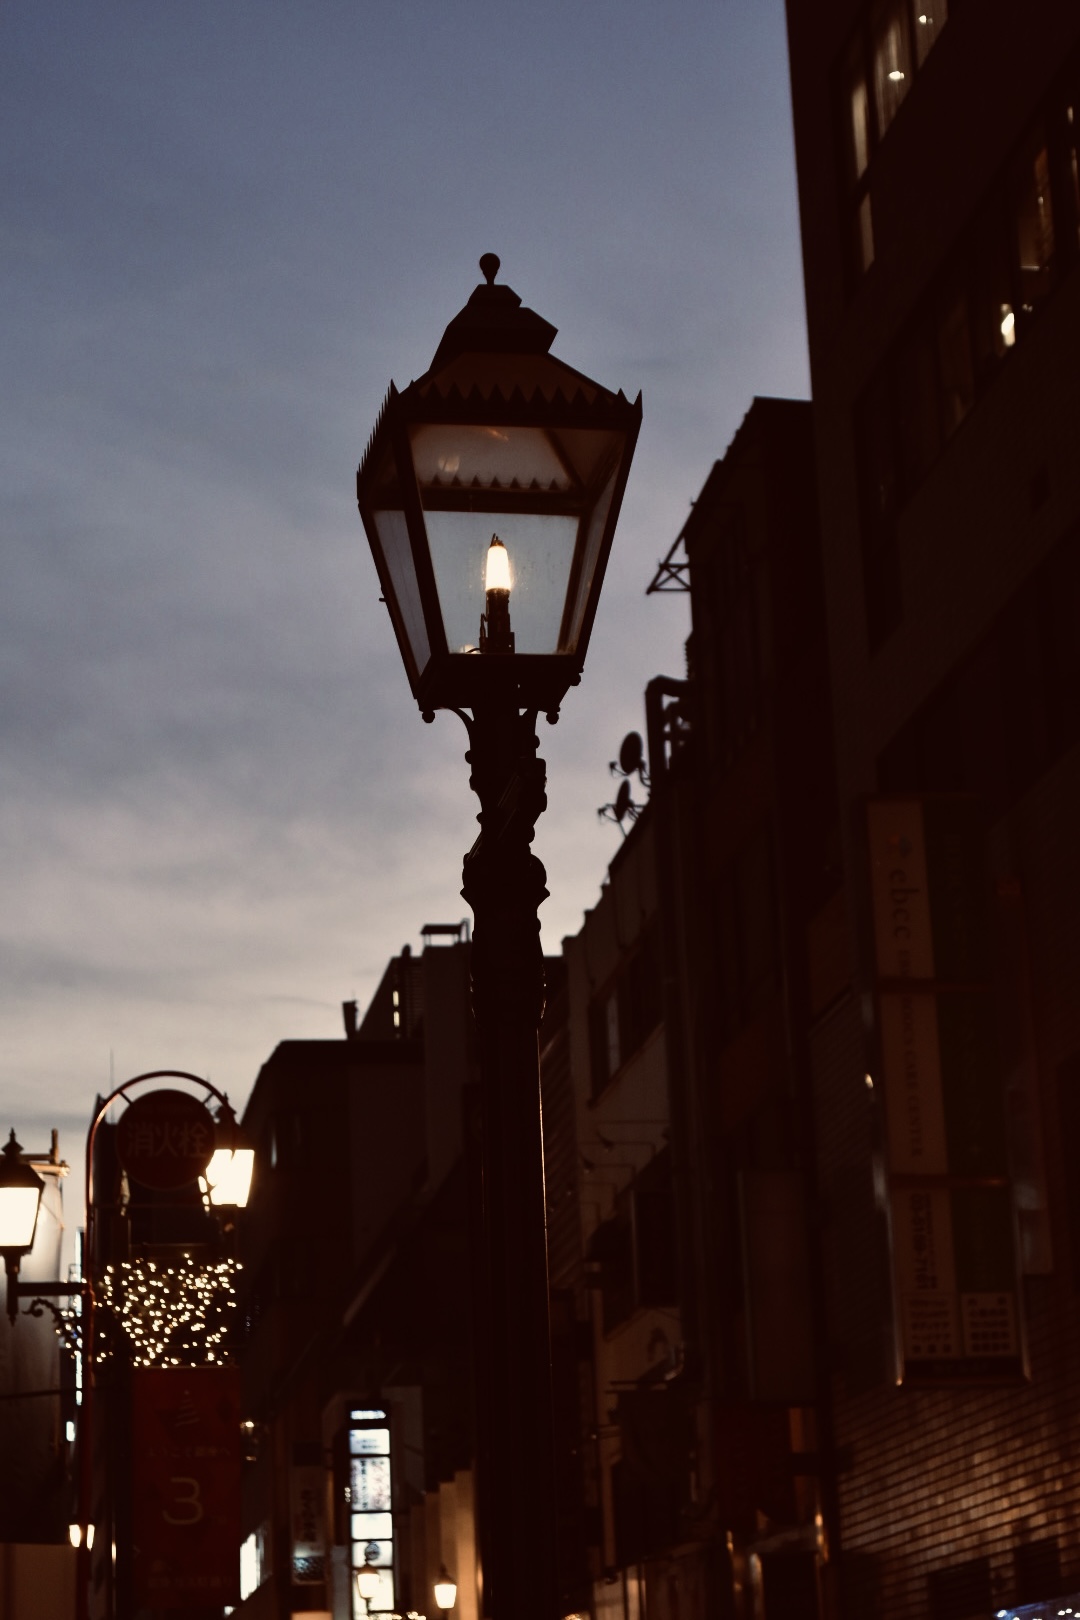 明治 大正の銀座イルミネーションとガス燈の物語 光輝く街をトリビア散歩 東京散歩トリビア